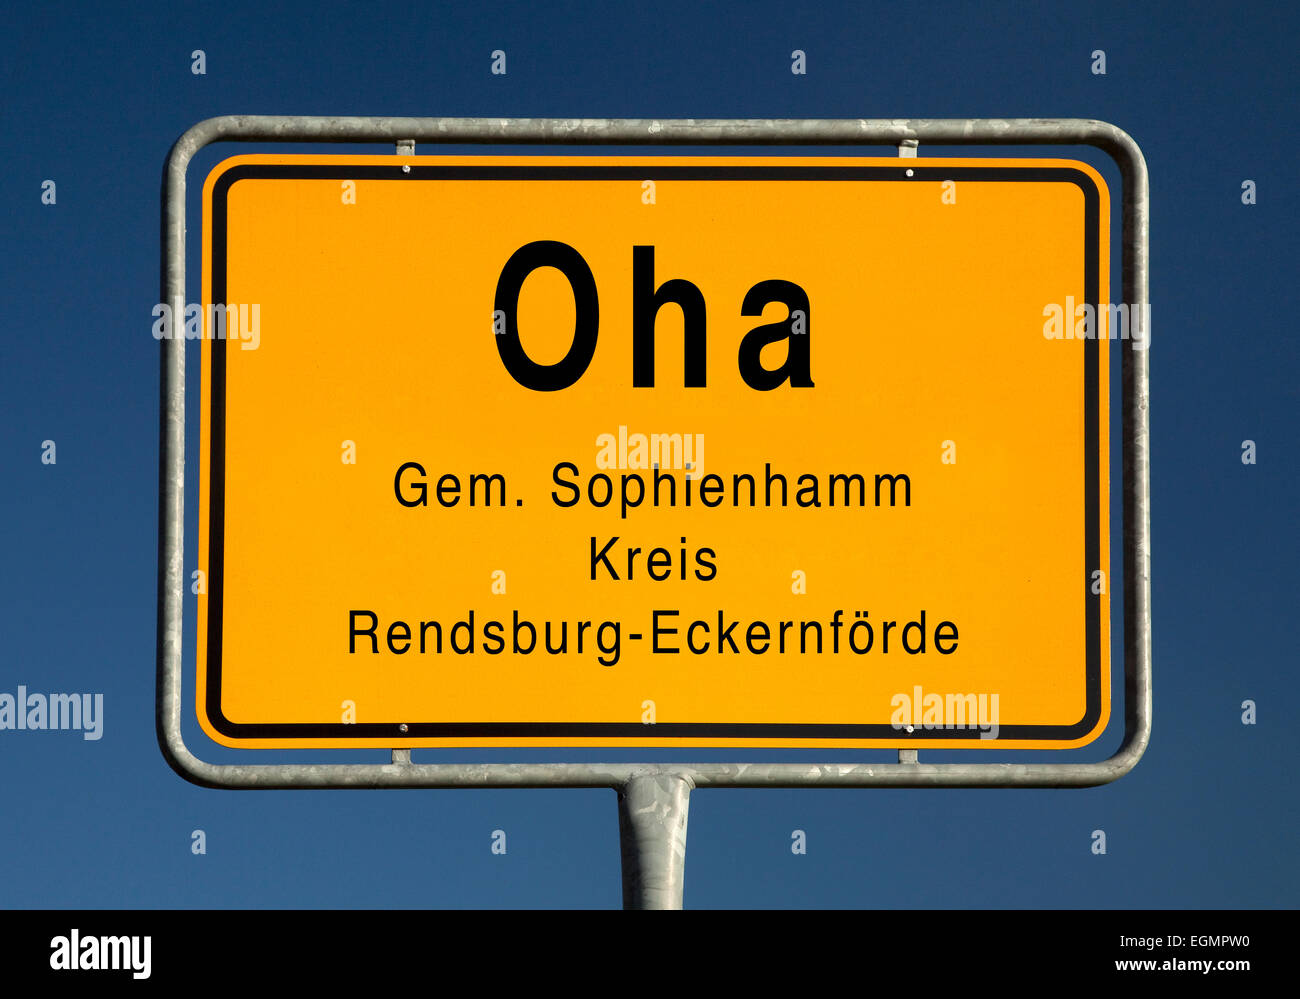 Los límites de la ciudad, signo de la Oha, distrito del municipio Sophienhamm, Rendsburg-Eckernförde, Schleswig-Holstein, Alemania Foto de stock